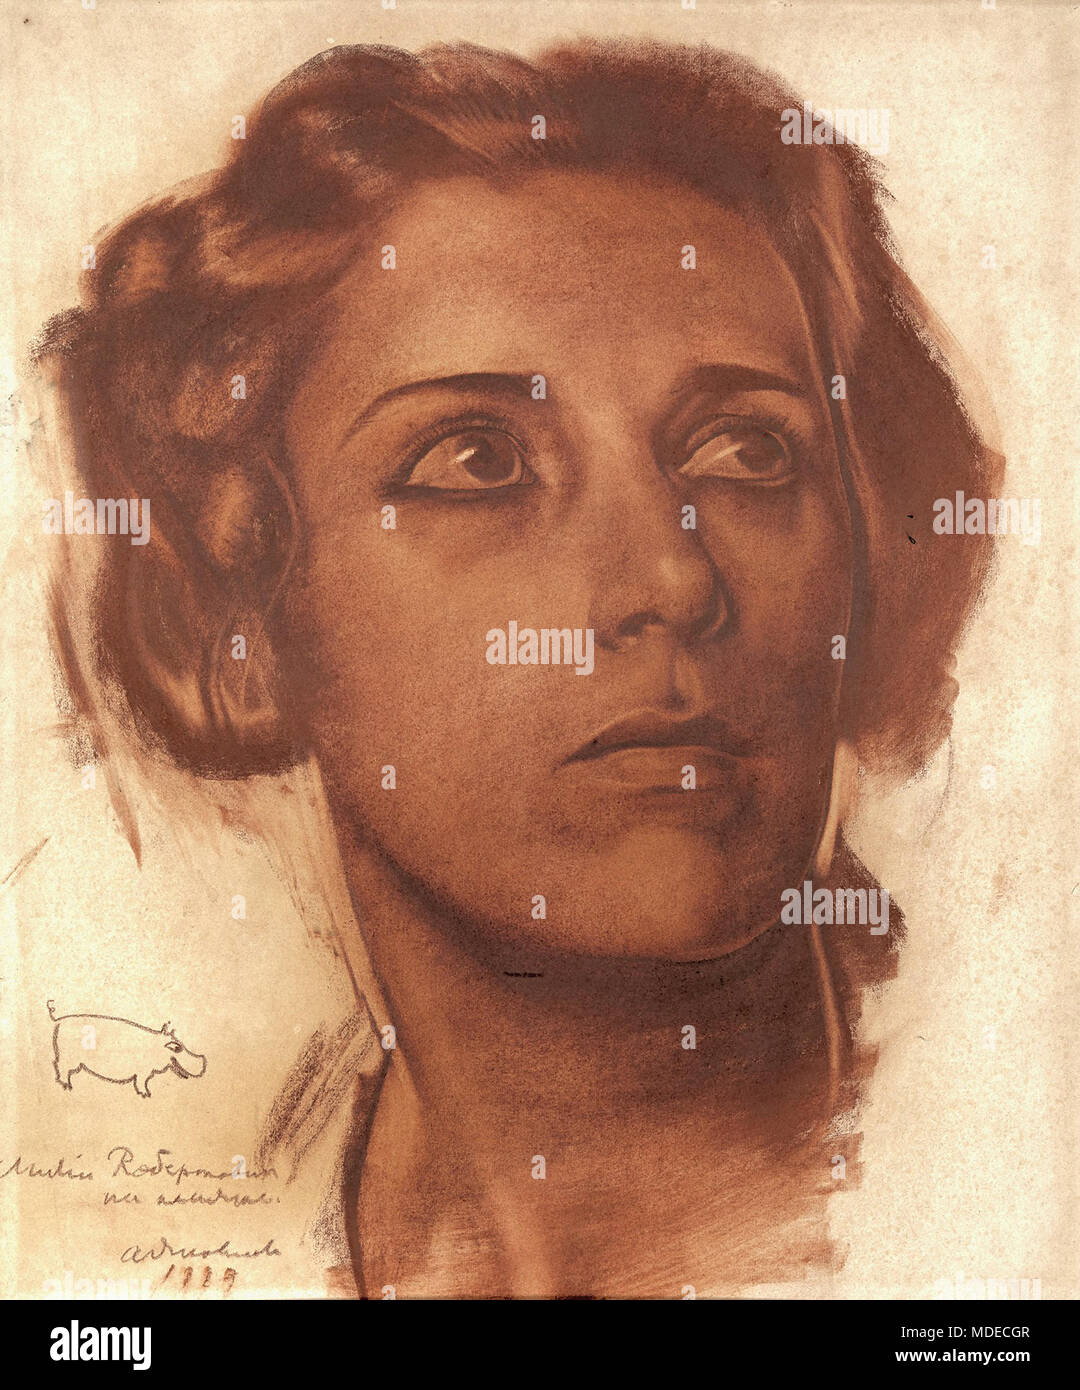 Yakovlev Aleksandr Evgenevich - Female Portrait Stock Photo